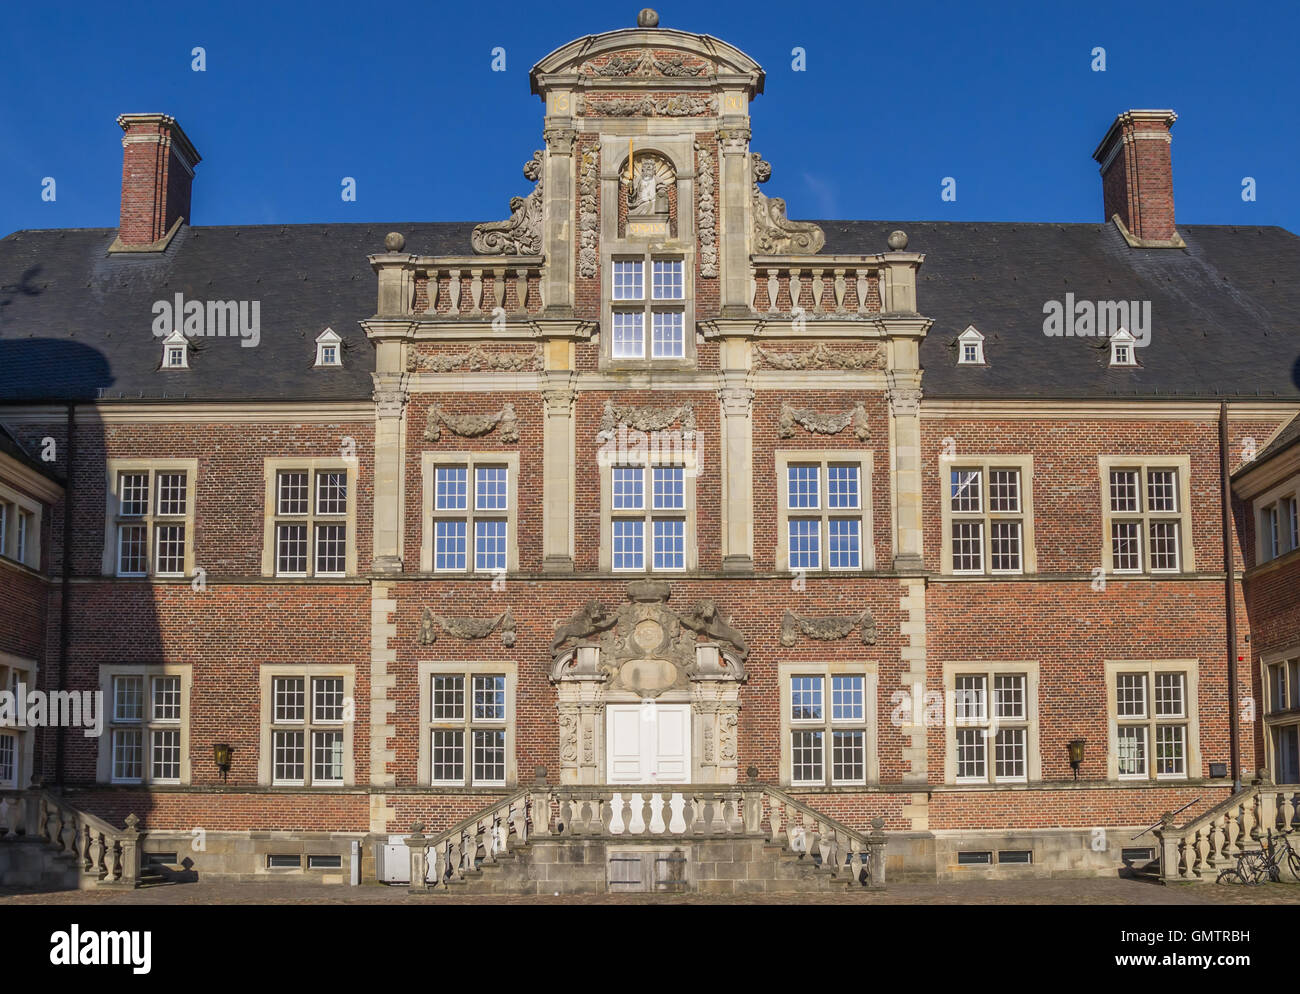 La façade sur cour pavée de l'Ahaus château en Allemagne Banque D'Images